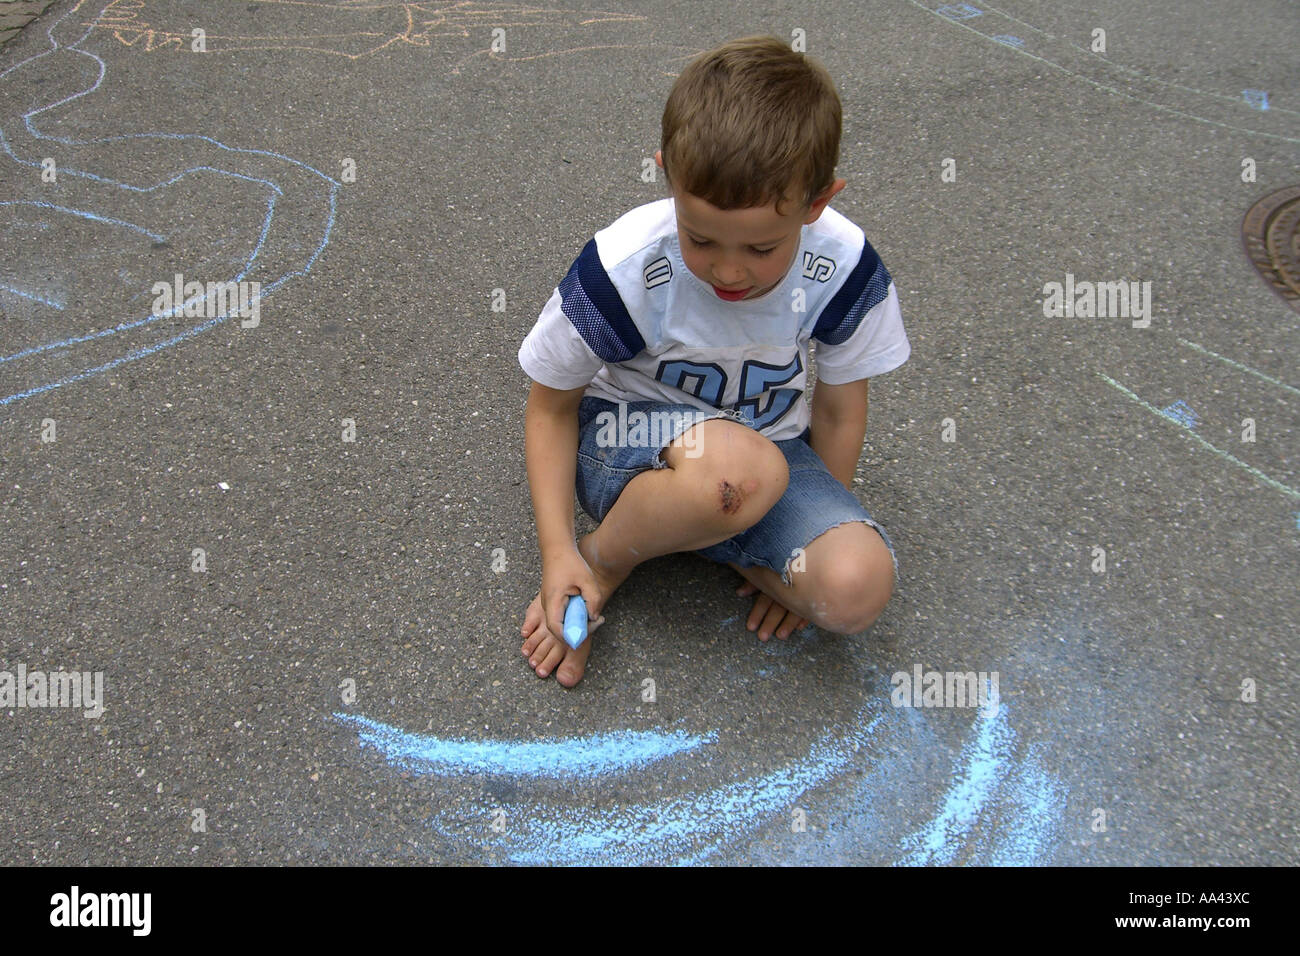 Kind ist auf der Straße mit blauer Kreide zeichnen Stockfotografie - Alamy